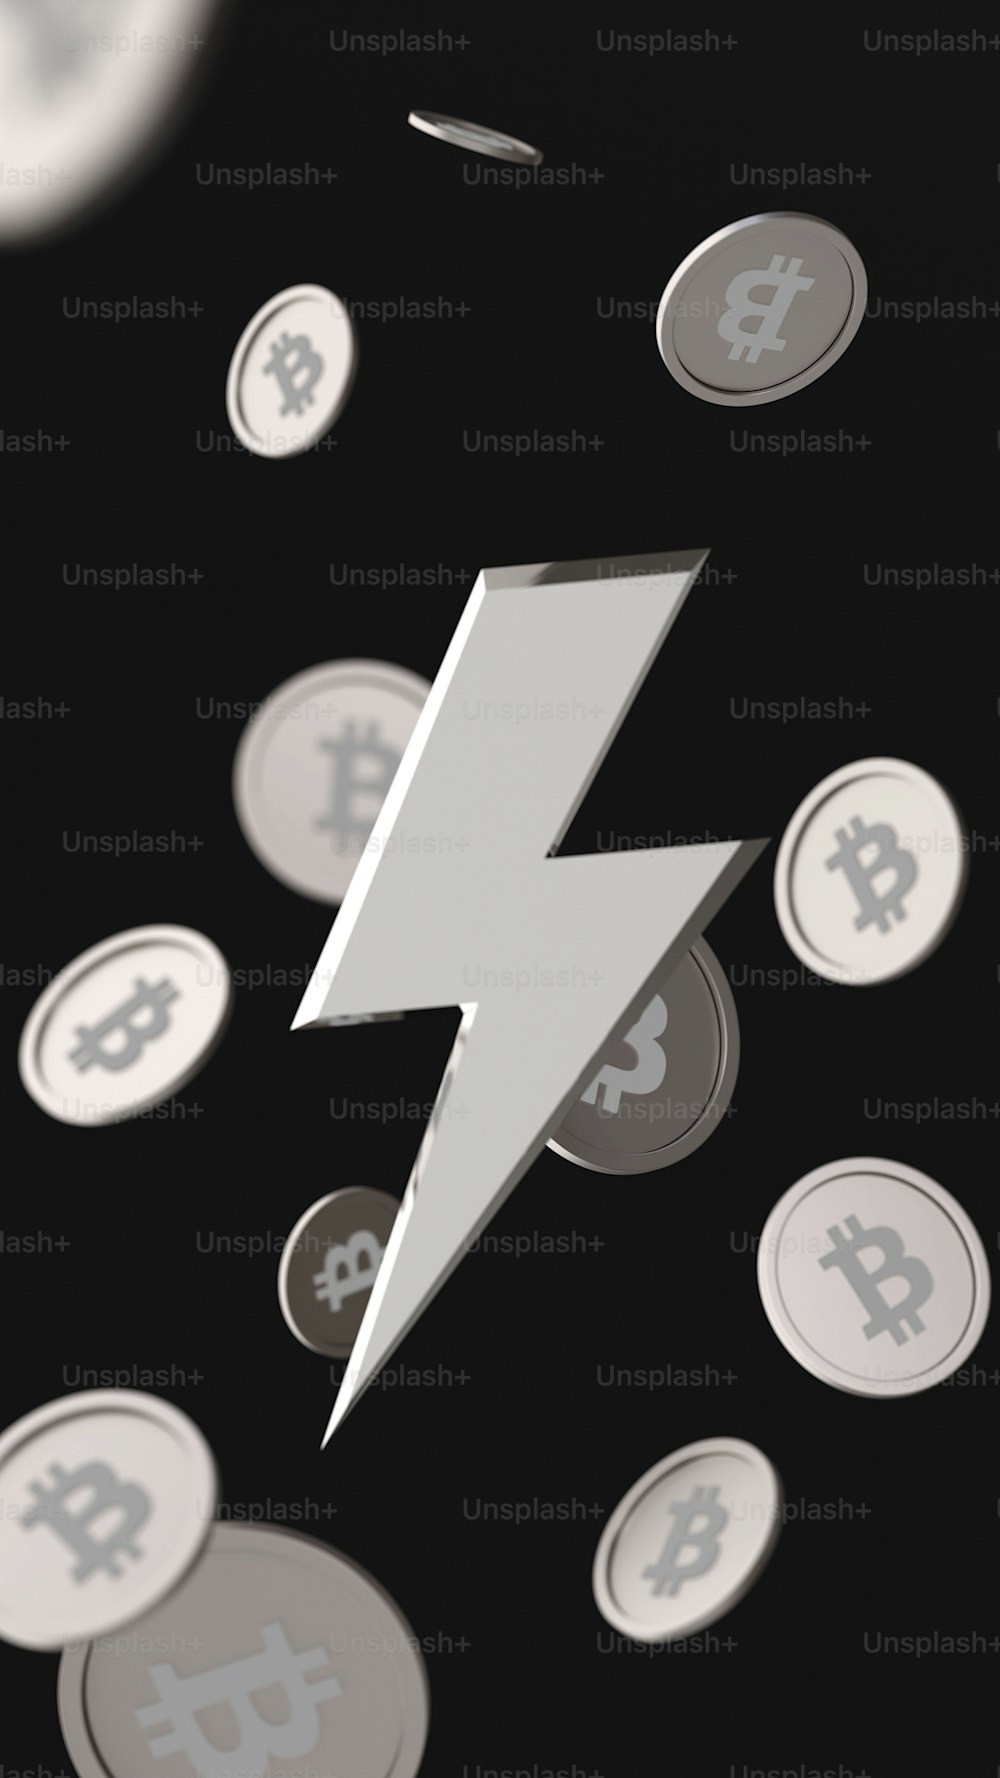 Ein Blitz umgeben von Bitcoins